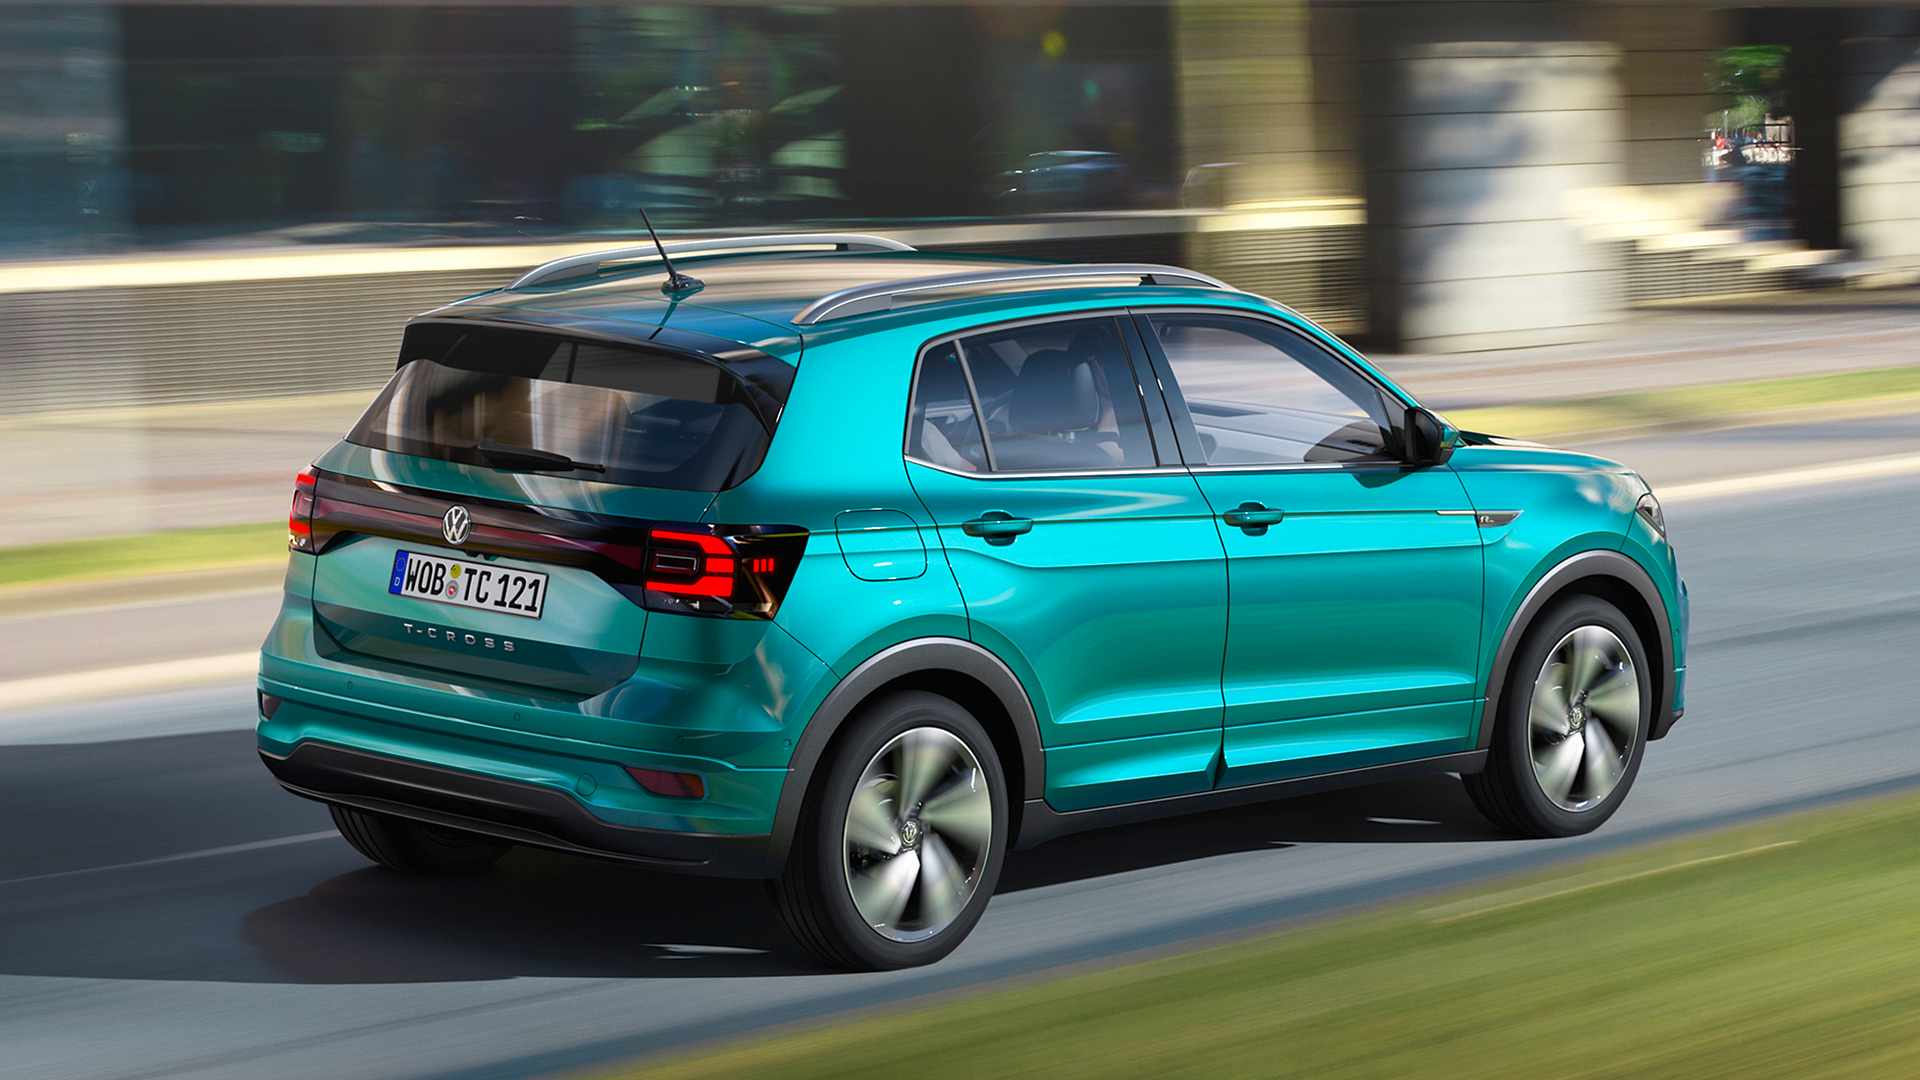 2022 VW T cross ACTIVE Preisliste und technische daten 2021 11 23 